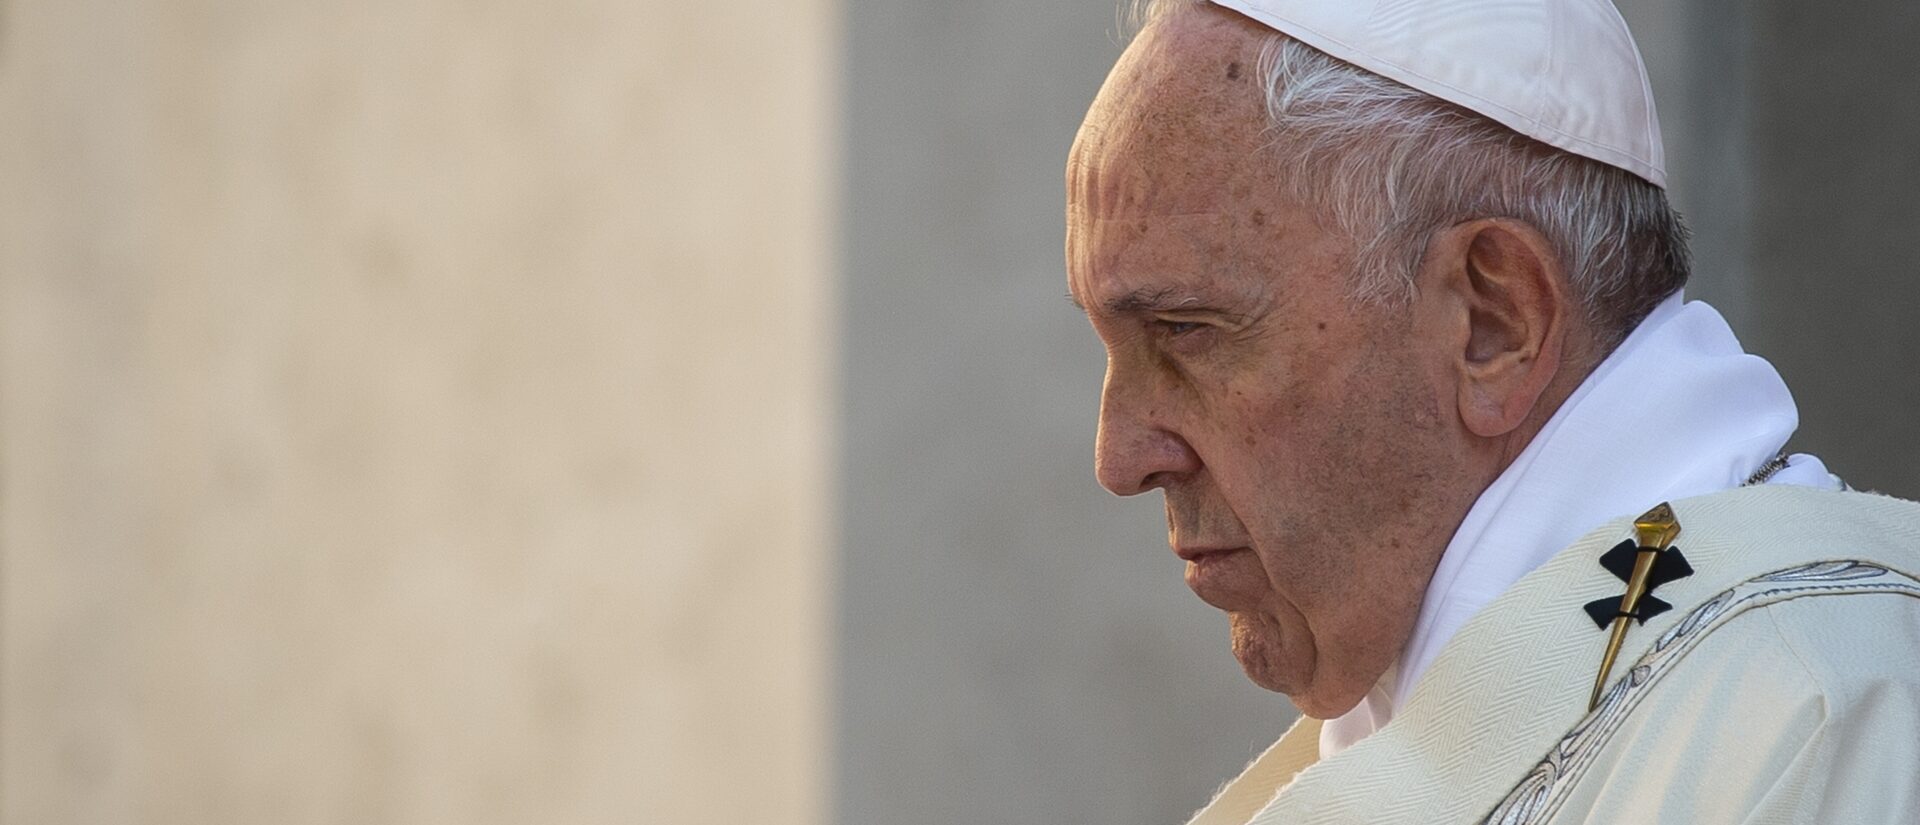 Le pape François dit souffrir d'une solitude "fonctionnelle" | © Antoine Mékary, I.MEDIA